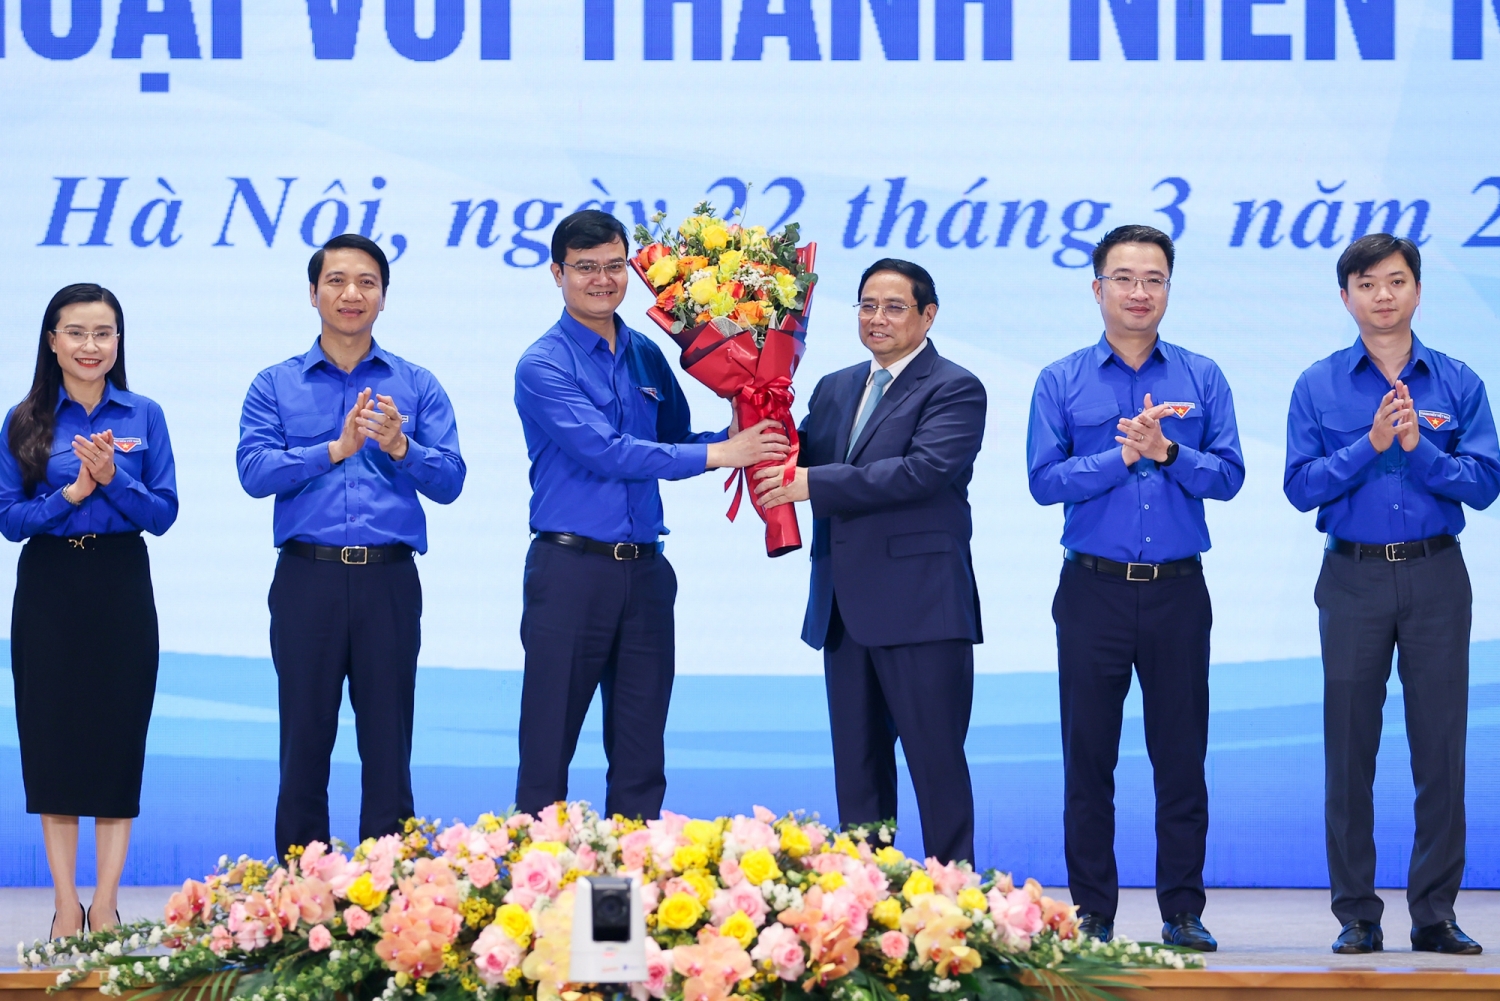 Thủ tướng Phạm Minh Chính đối thoại với thanh niên năm 2023